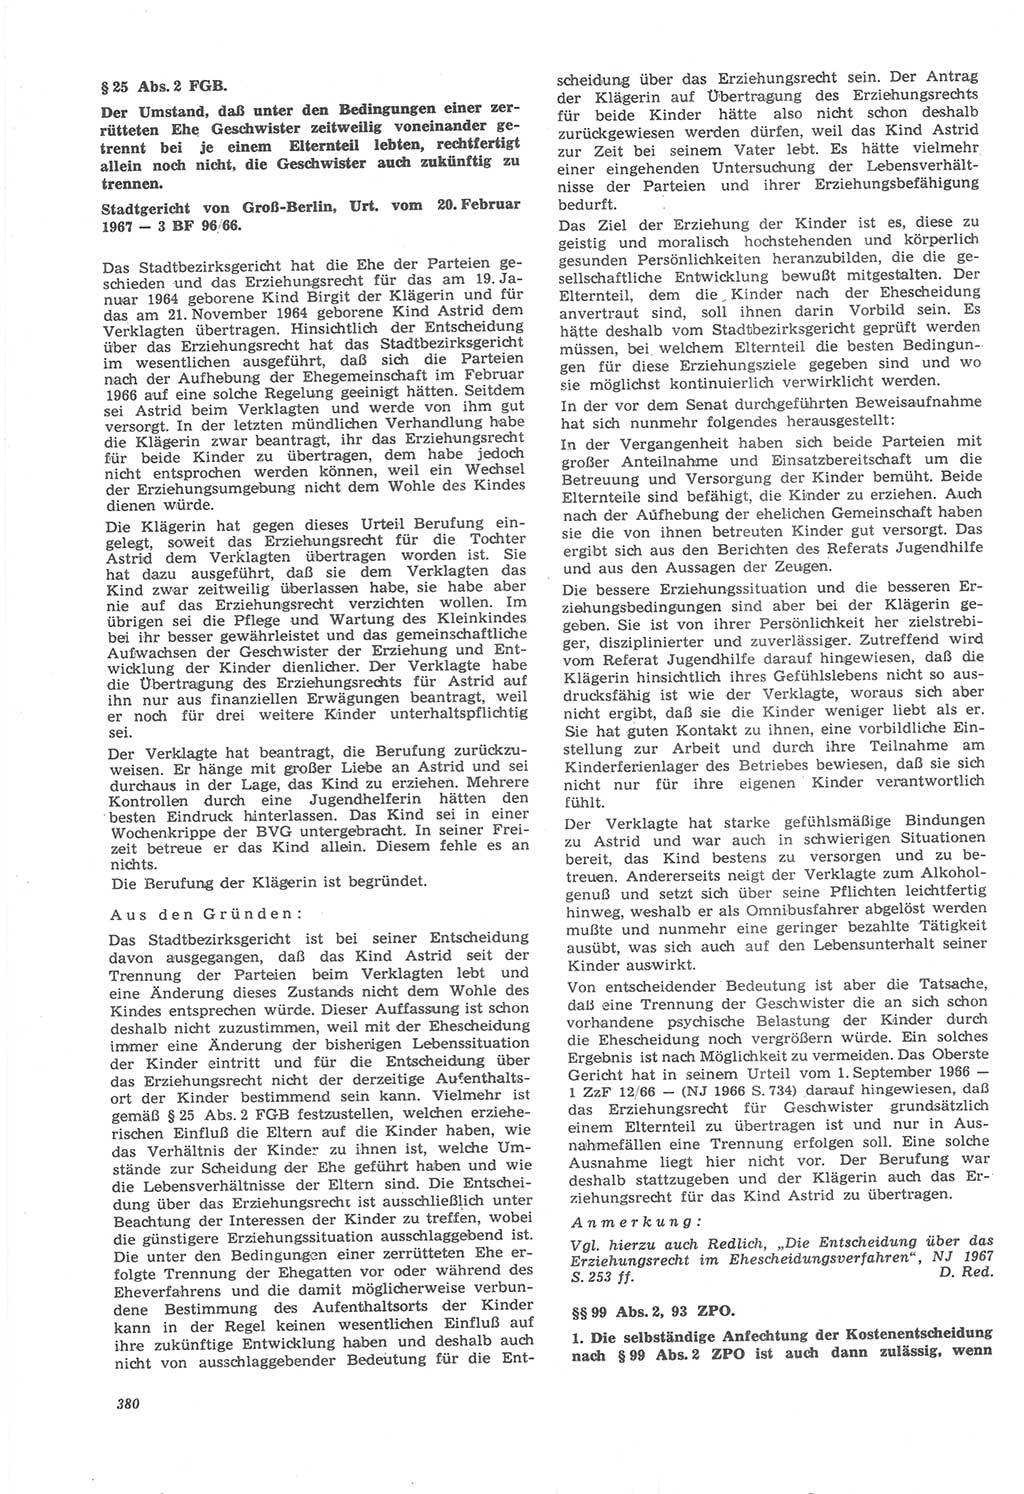 Neue Justiz (NJ), Zeitschrift für Recht und Rechtswissenschaft [Deutsche Demokratische Republik (DDR)], 22. Jahrgang 1968, Seite 380 (NJ DDR 1968, S. 380)